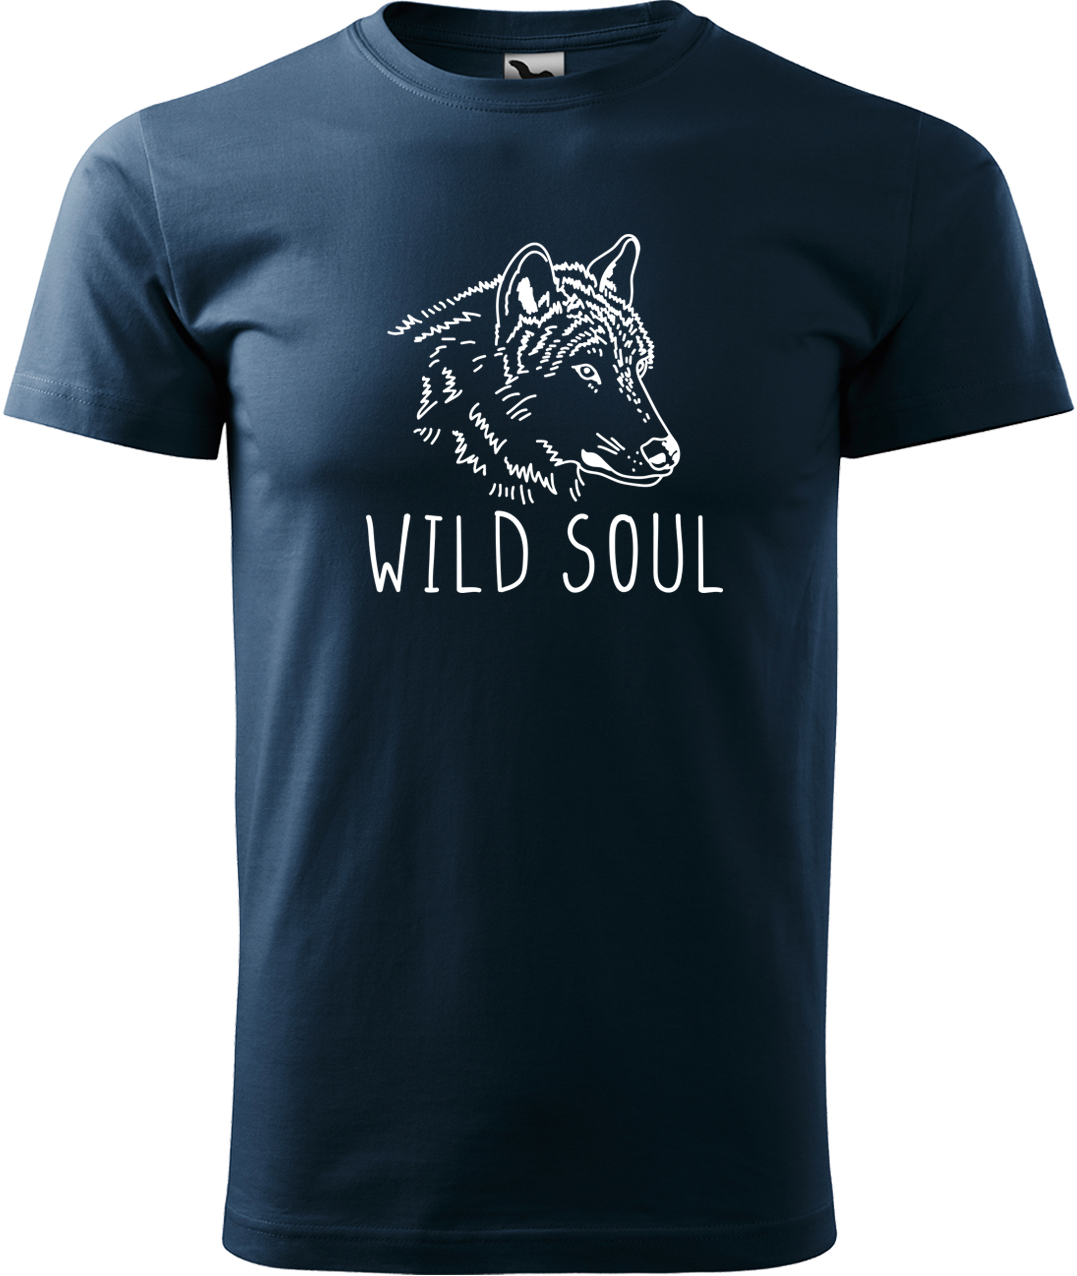 Pánské tričko s vlkem - Wild soul Velikost: S, Barva: Námořní modrá (02), Střih: pánský